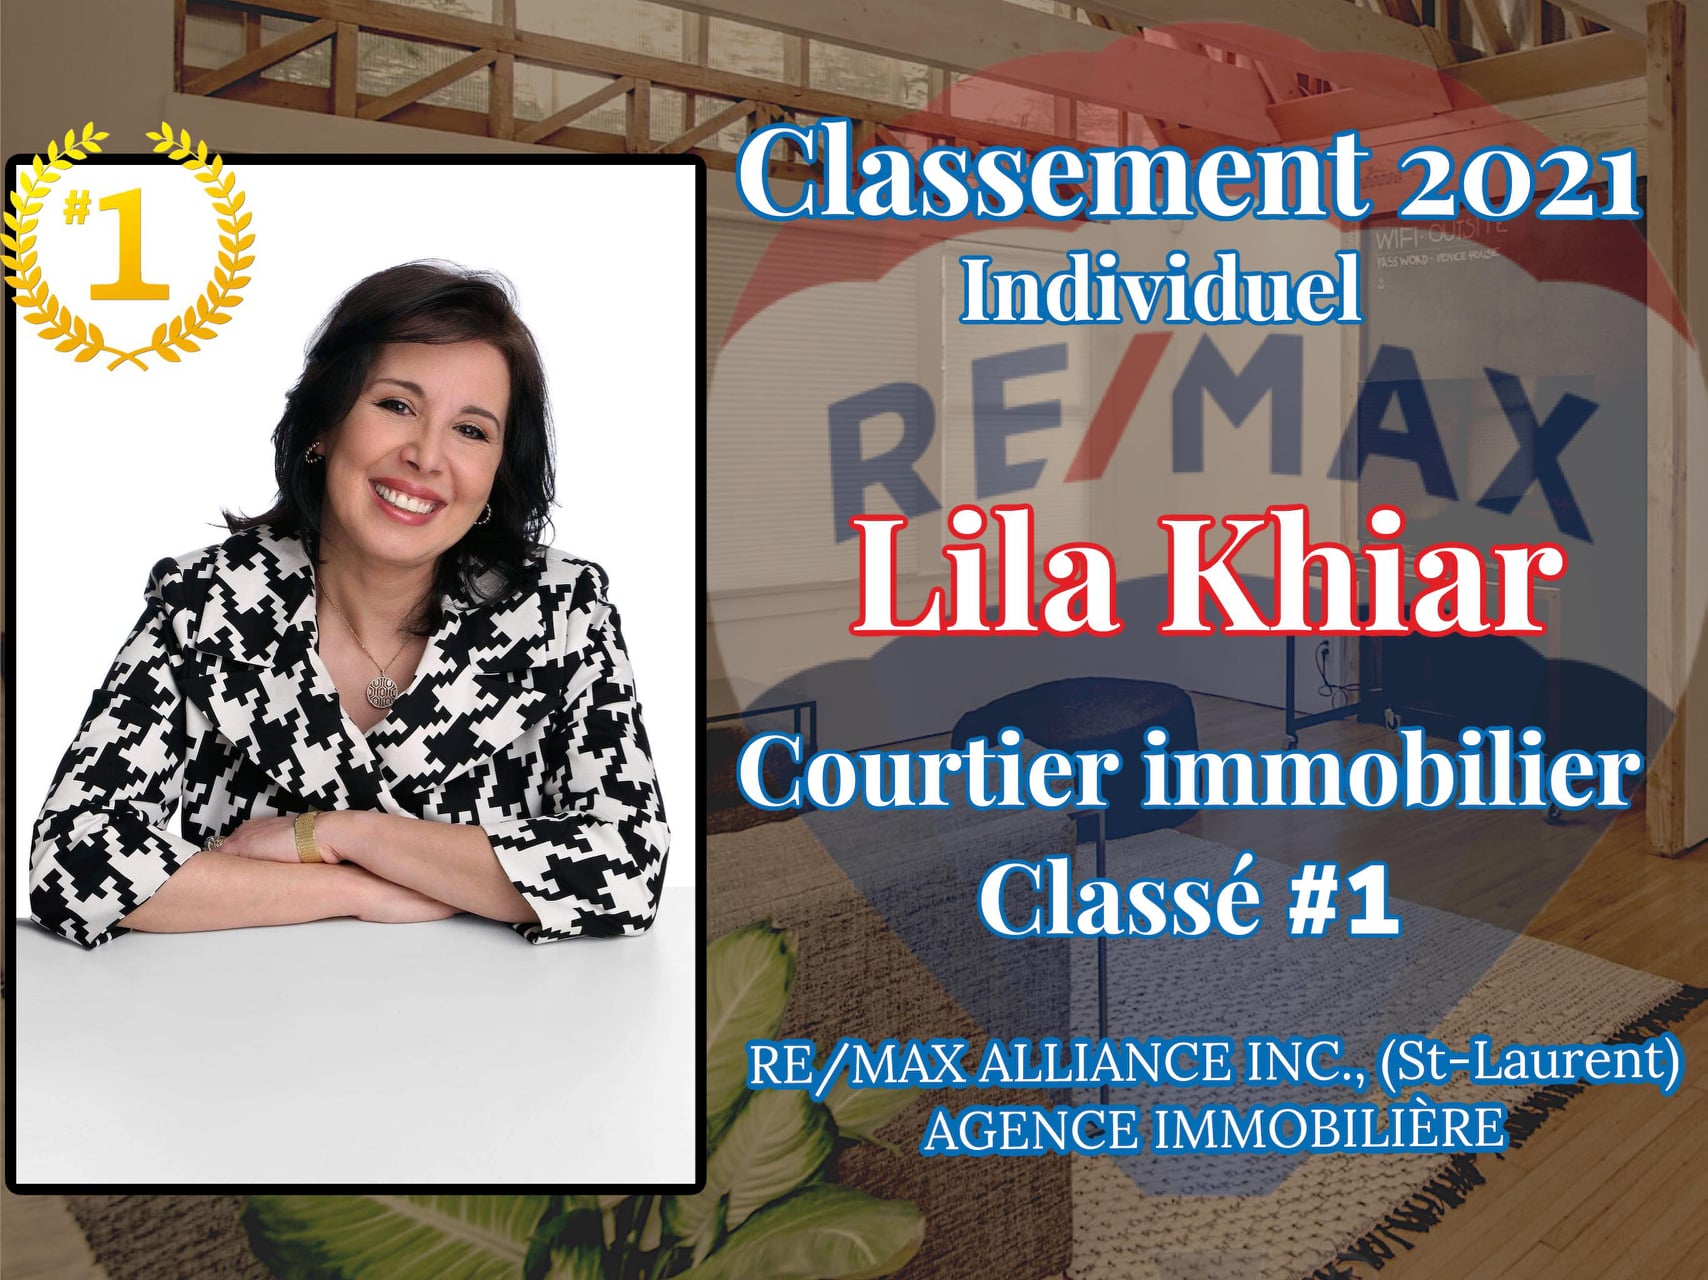 Lila Khiar Courtier immobilier classé #1 - Classement 2021 Individuel - RE/MAX Alliance Inc. (St-Laurent) Agence Immobilière